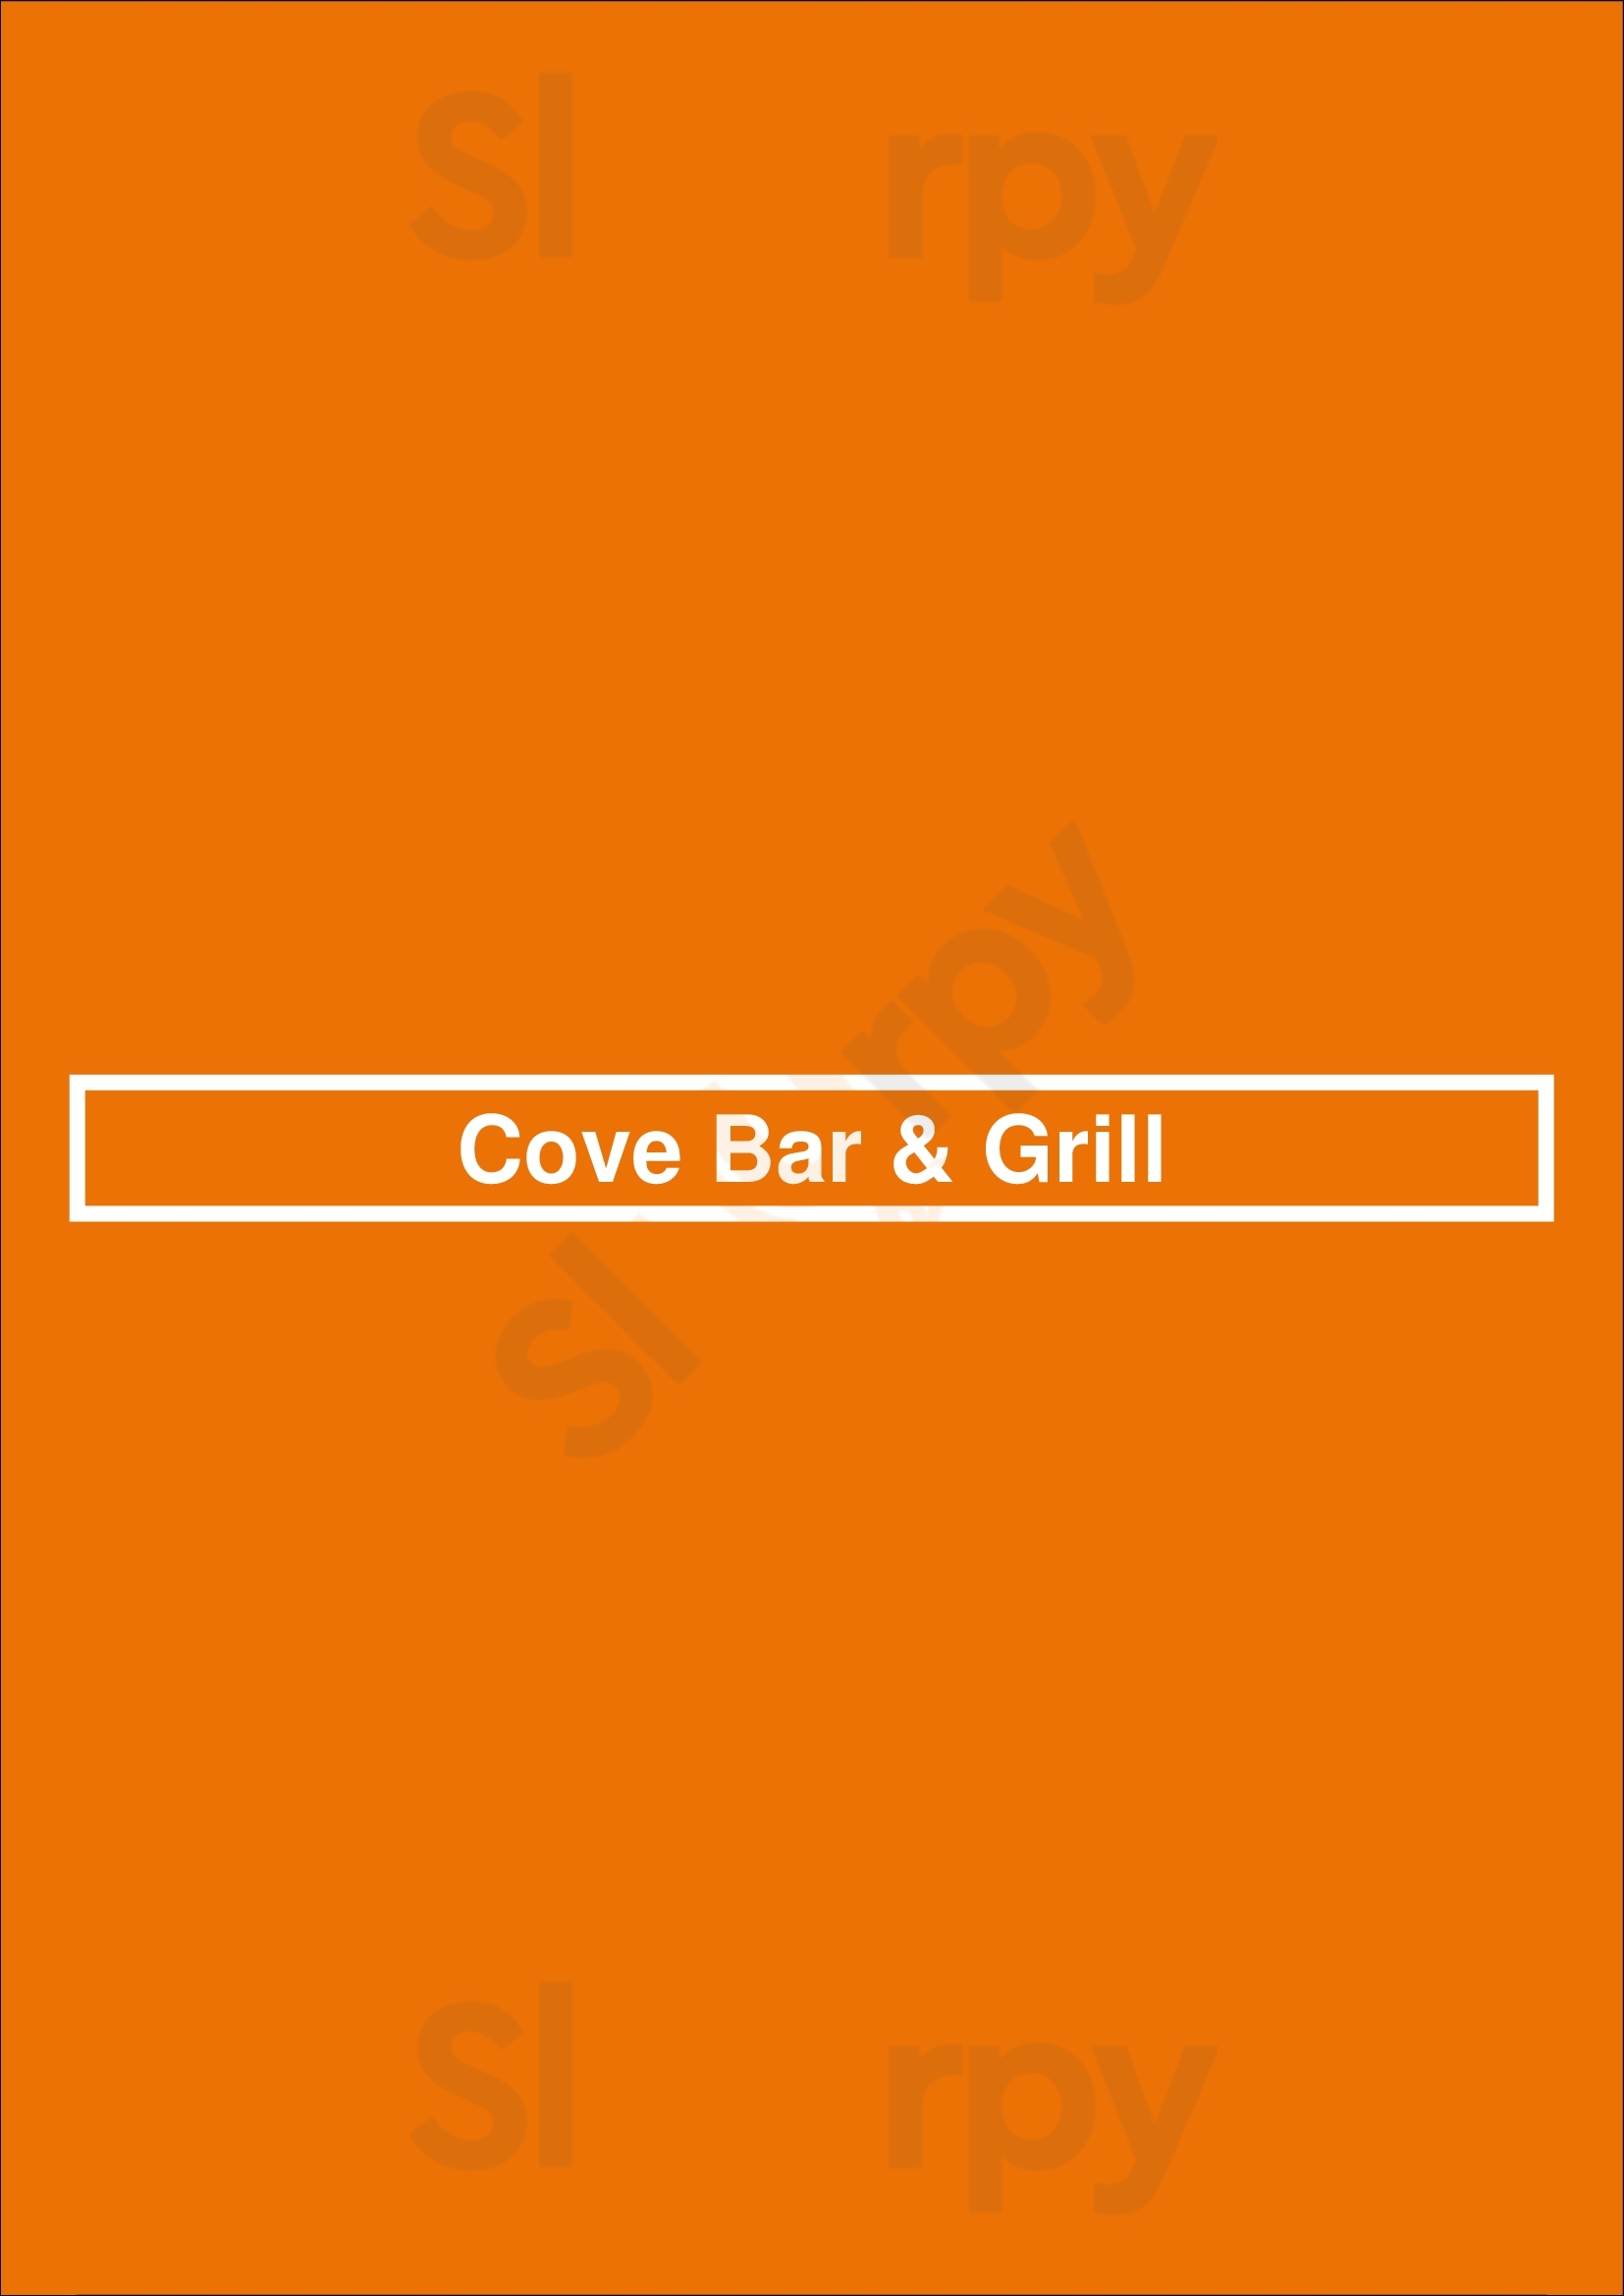 Cove Bar & Grill Kareela Menu - 1